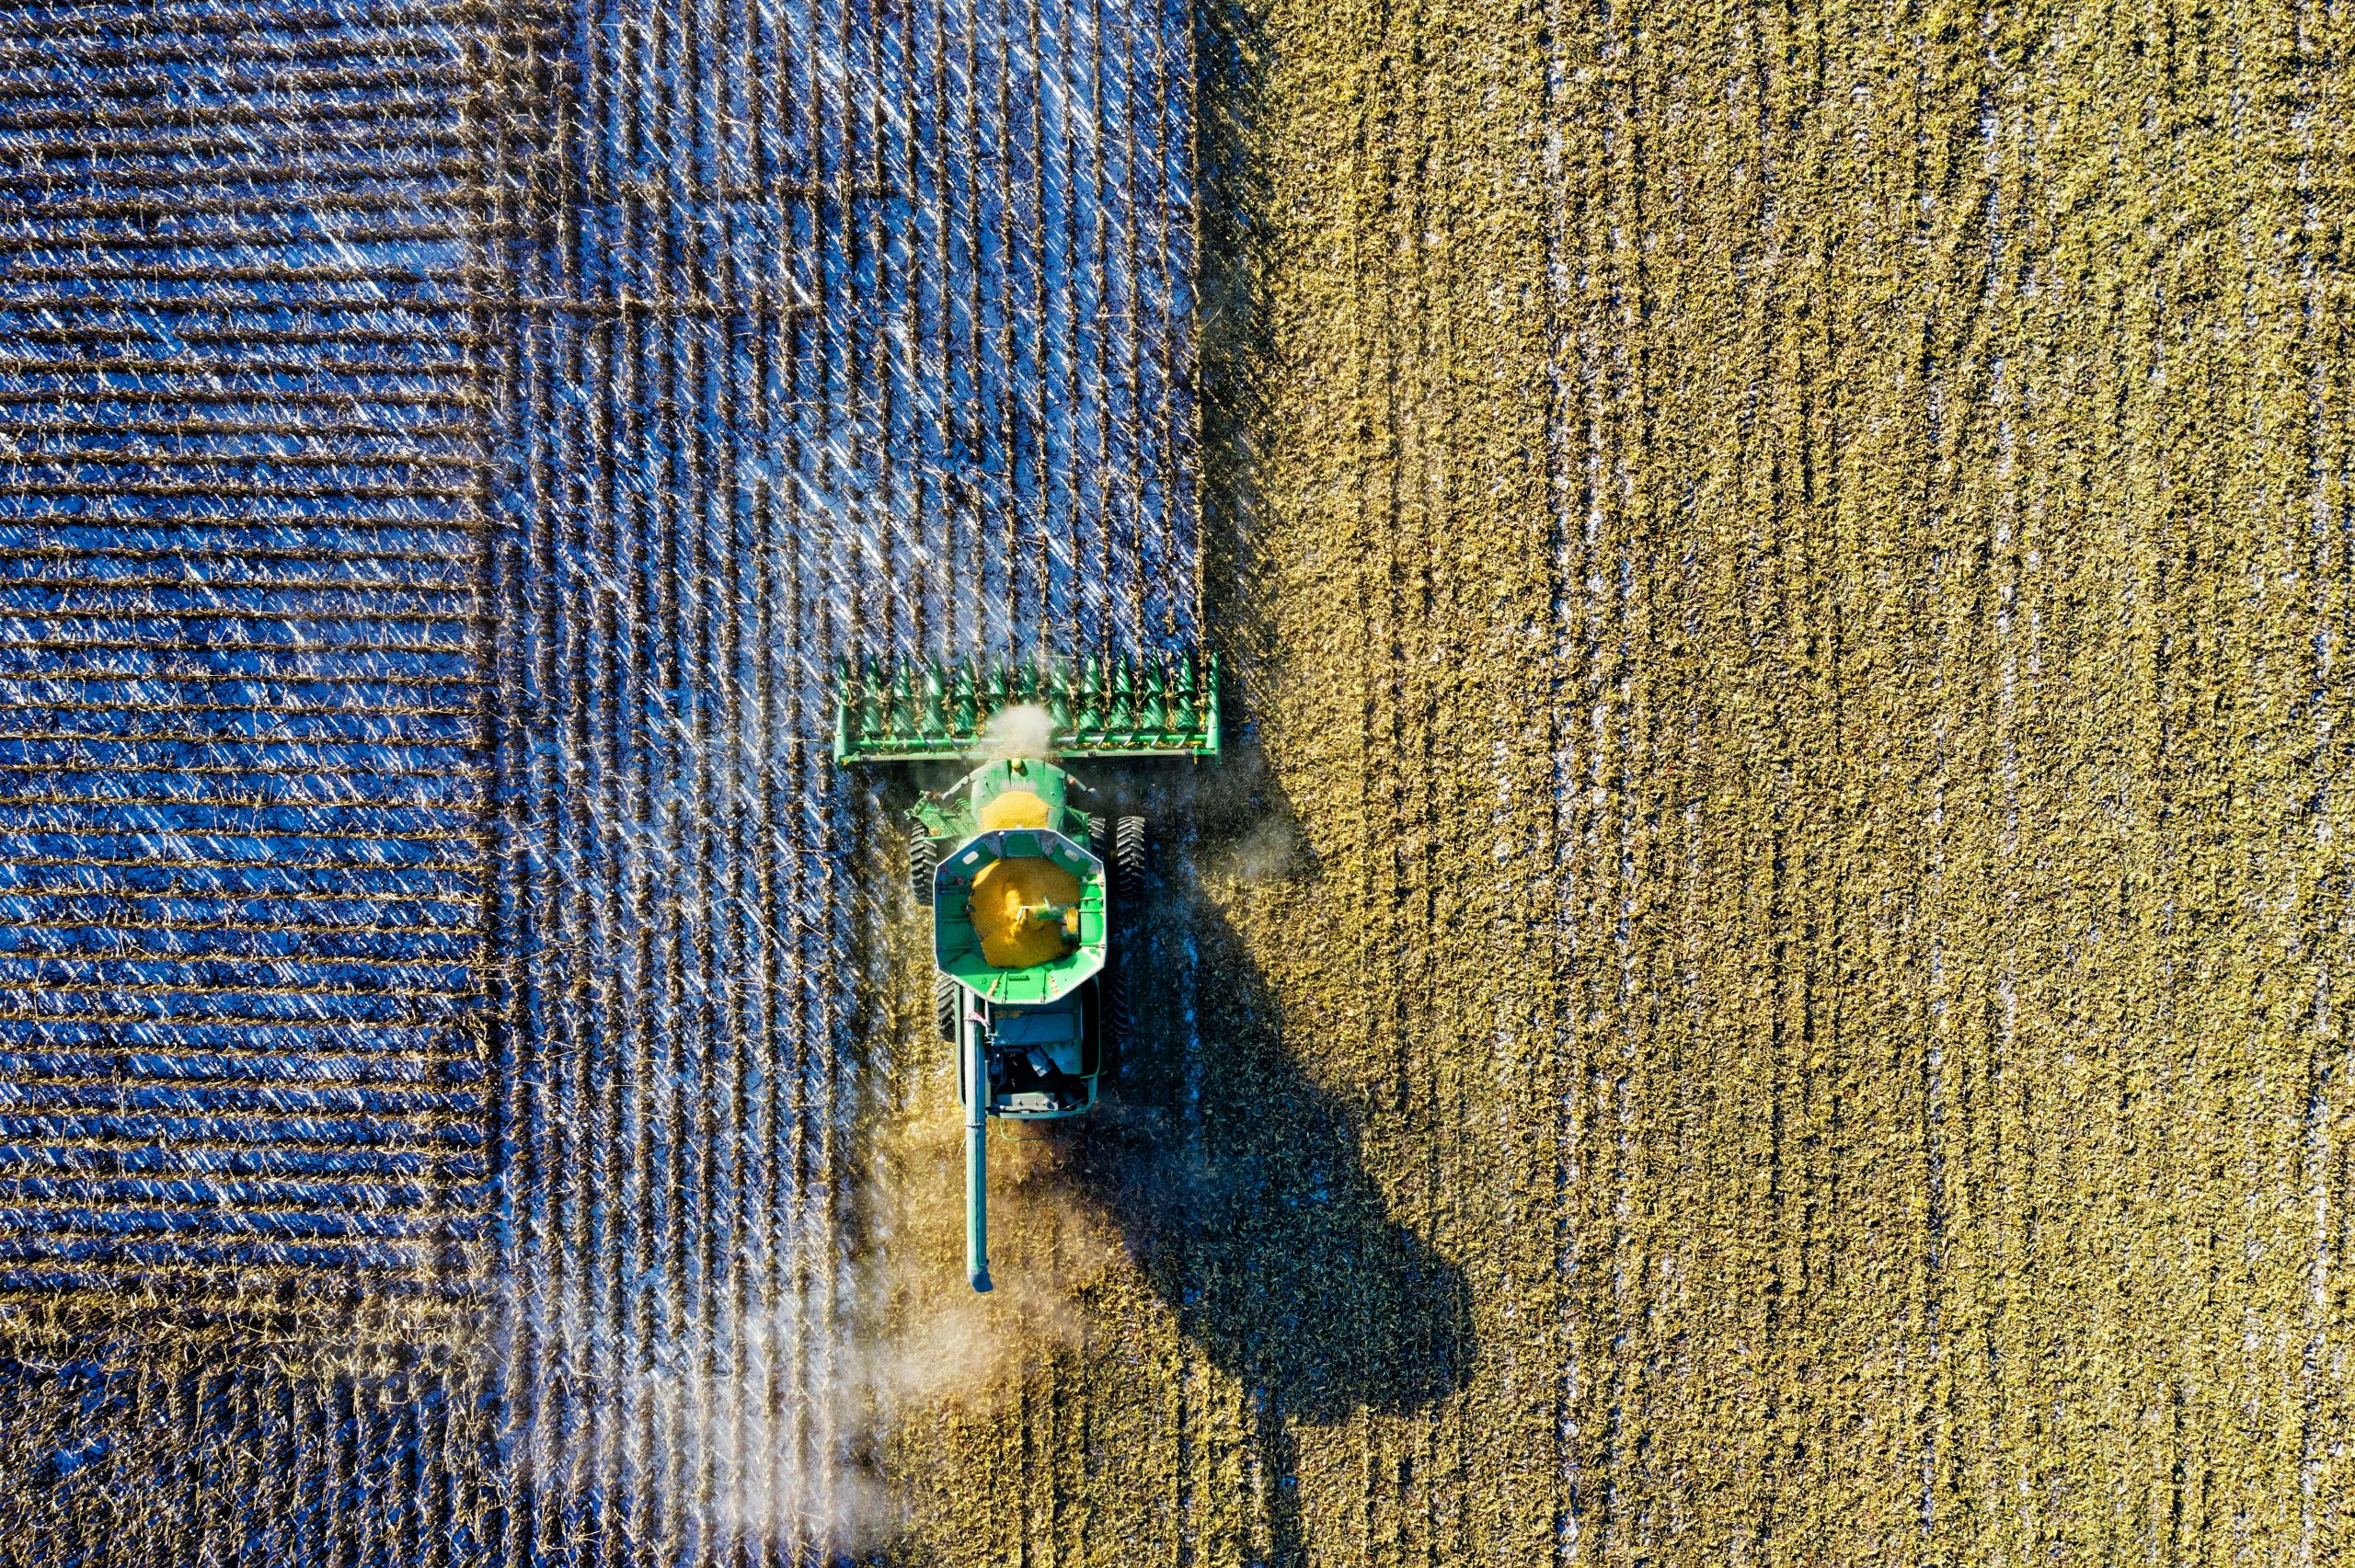 Una cosechadora de maíz trabajando en un campo en México. La cosechadora es de color amarillo y está equipada con una plataforma de corte y una tolva. La plataforma de corte está cortando el maíz, y la tolva está recolectando los granos. El campo es de color verde y está lleno de maíz maduro. El cielo es azul y está despejado.